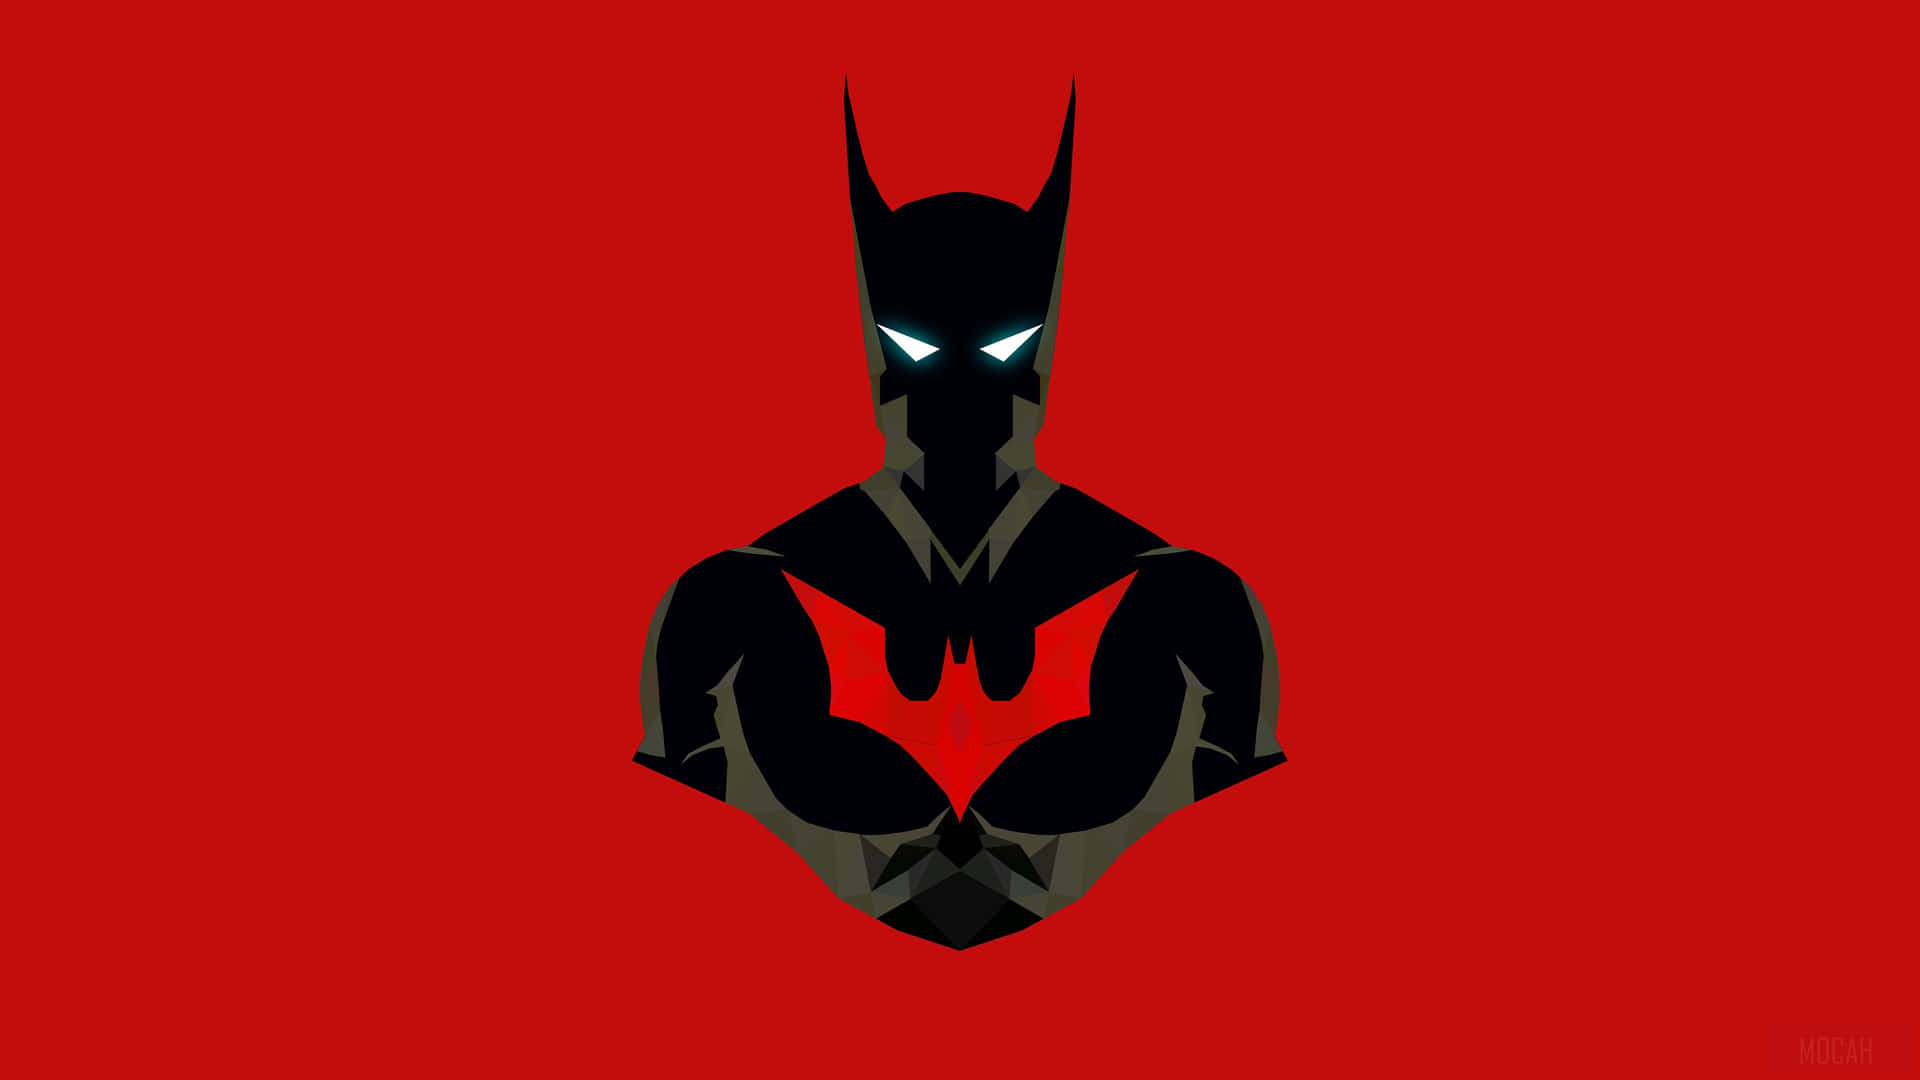 Batmanbeyond - Uno Dei Supereroi Più Iconici Di Tutti I Tempi